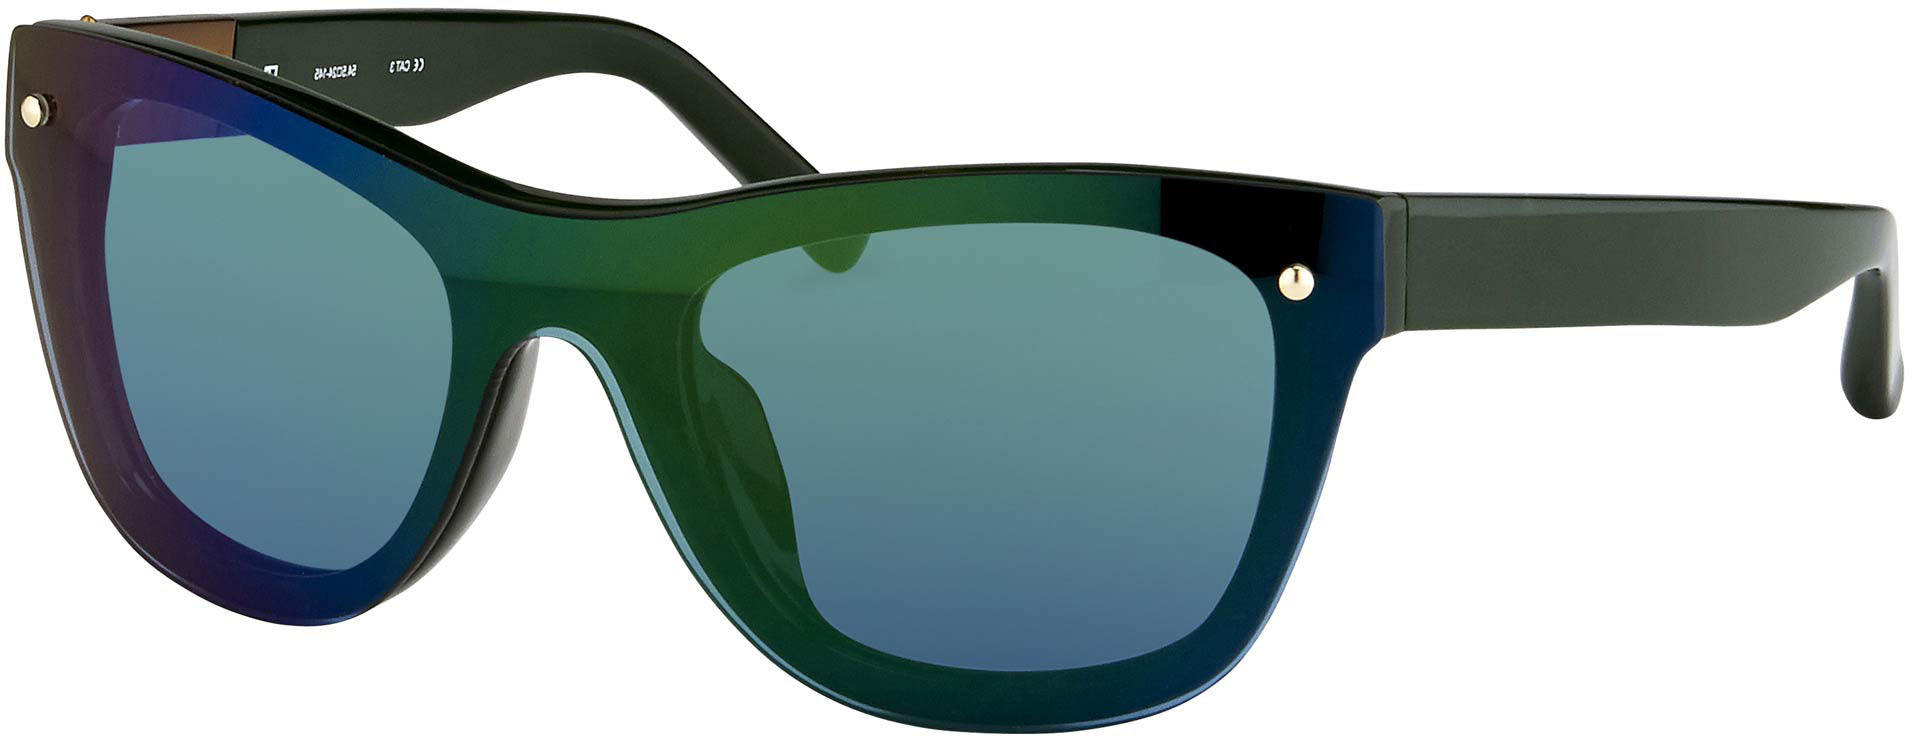 Color_PL34C9SUN - Phillip Lim 34 C9 D-Frame Sunglasses